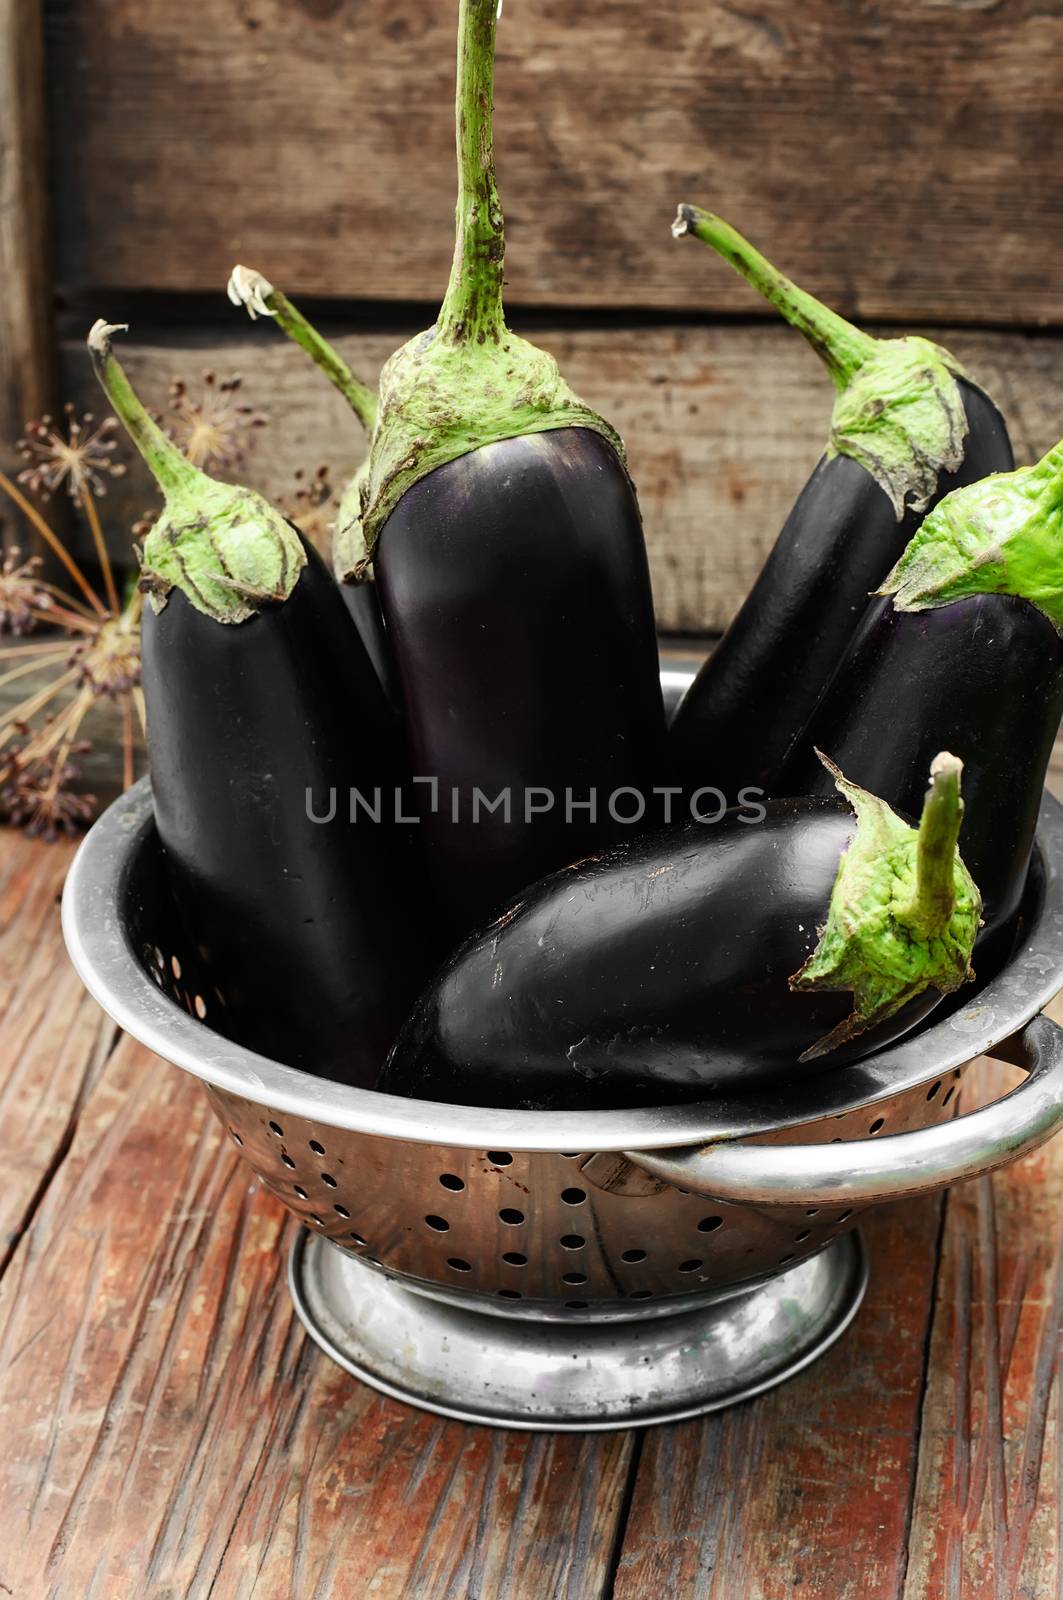 Summer crop of aubergine by LMykola